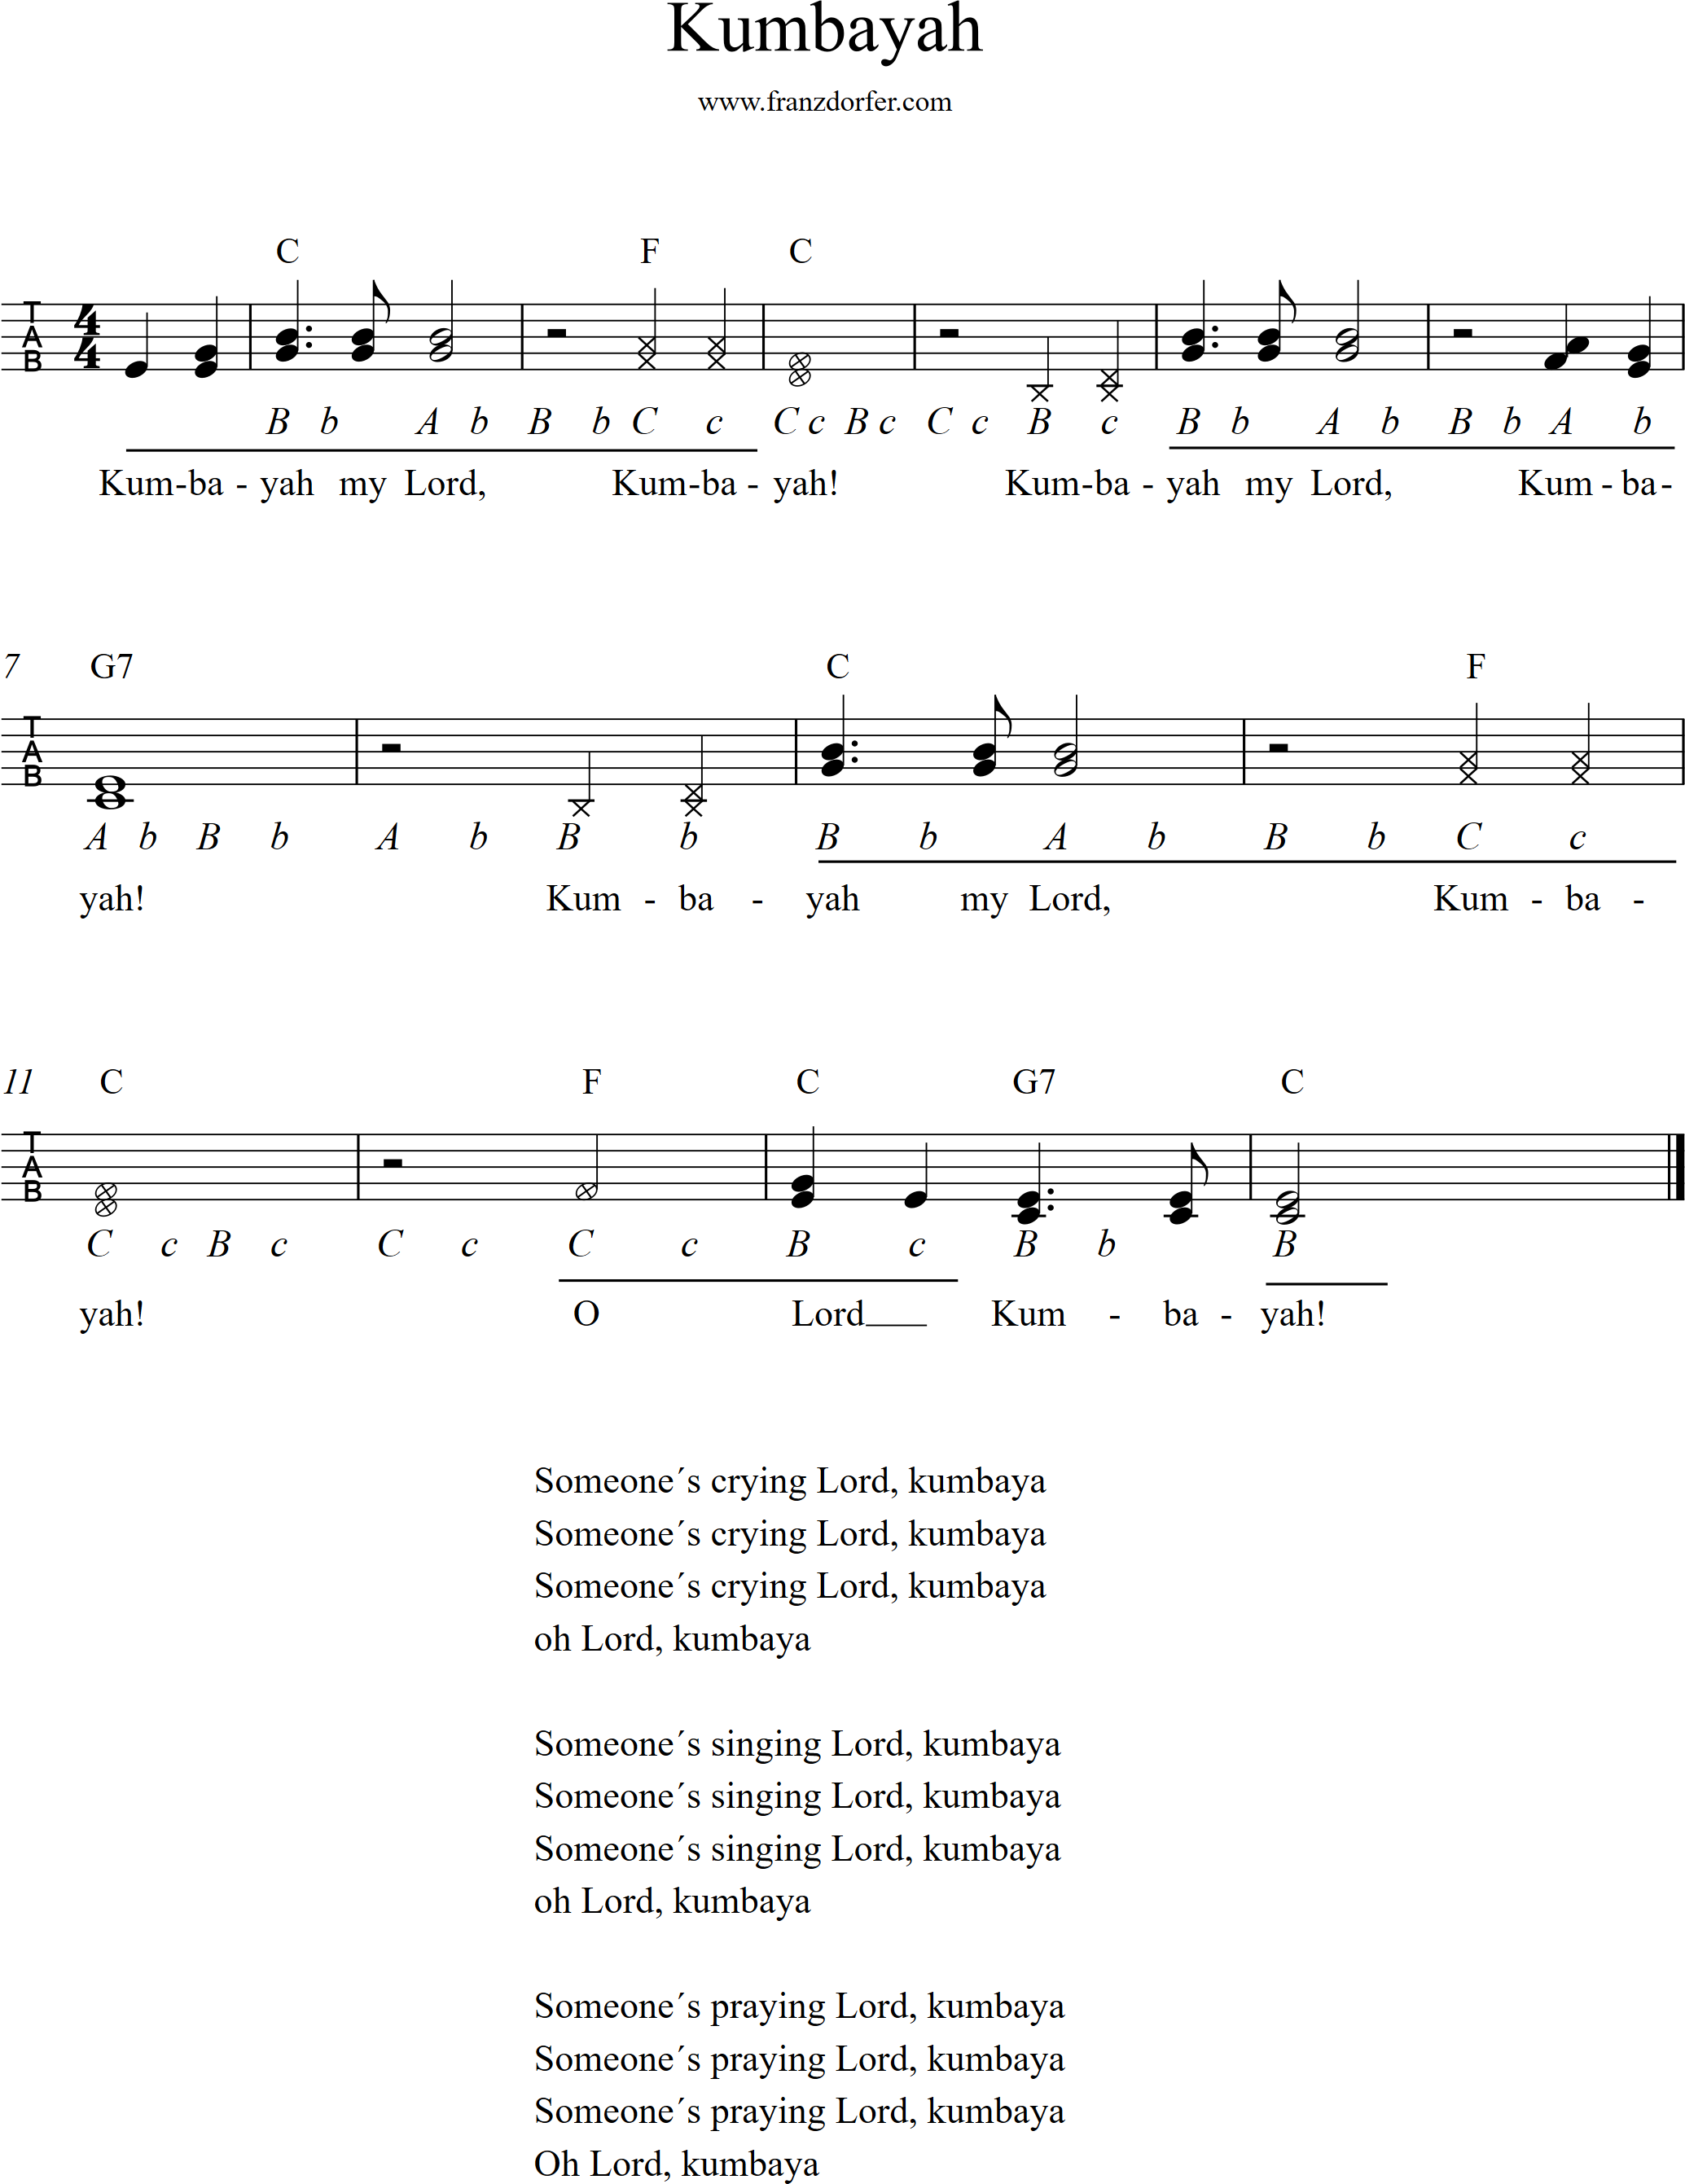 Noten für steirische harmonika- Kumbayah